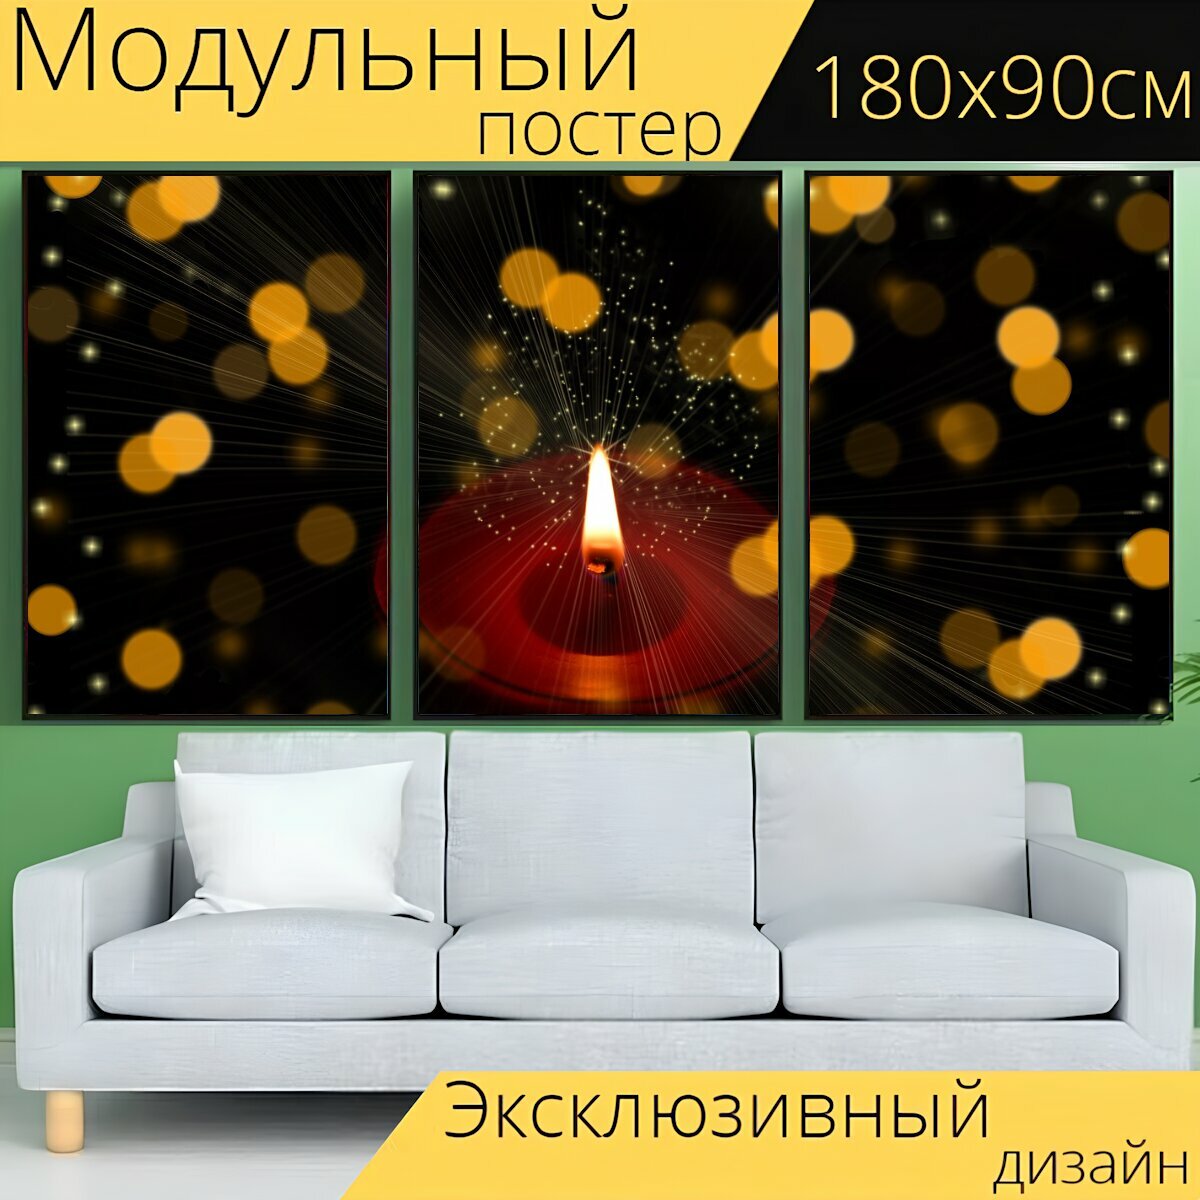 Модульный постер "Свеча, праздничная, свет" 180 x 90 см. для интерьера